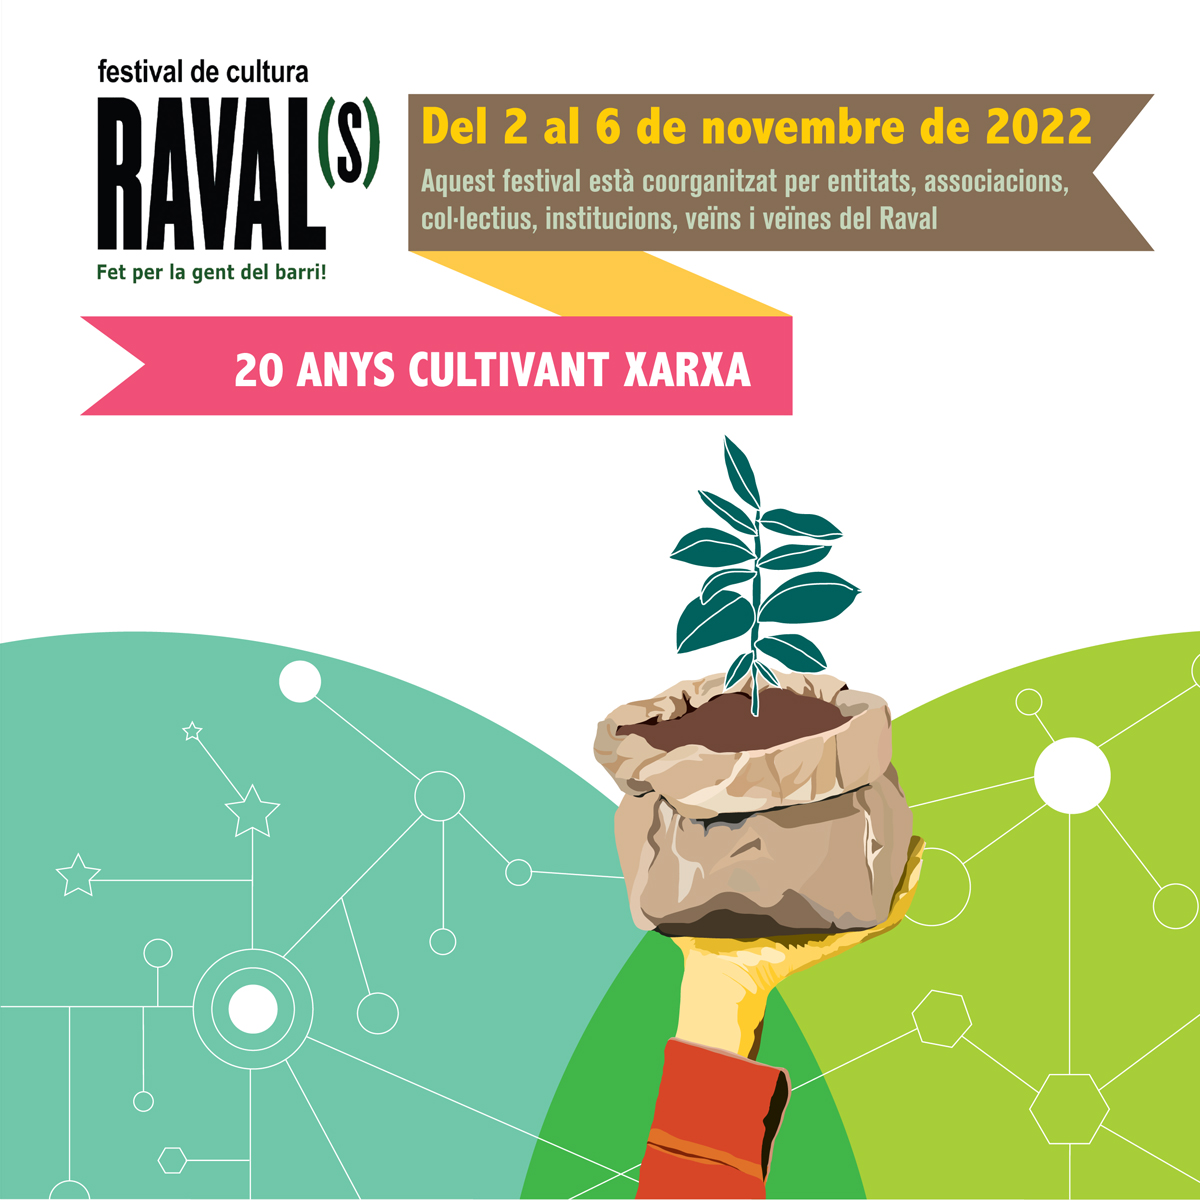 Festival de cultura Ravals del 2 al 6 de novembre de 2022. Aquest festival està coorganitzat per entitats, associacions, col·lectius, institucions, veïns i veïnes del Raval. 